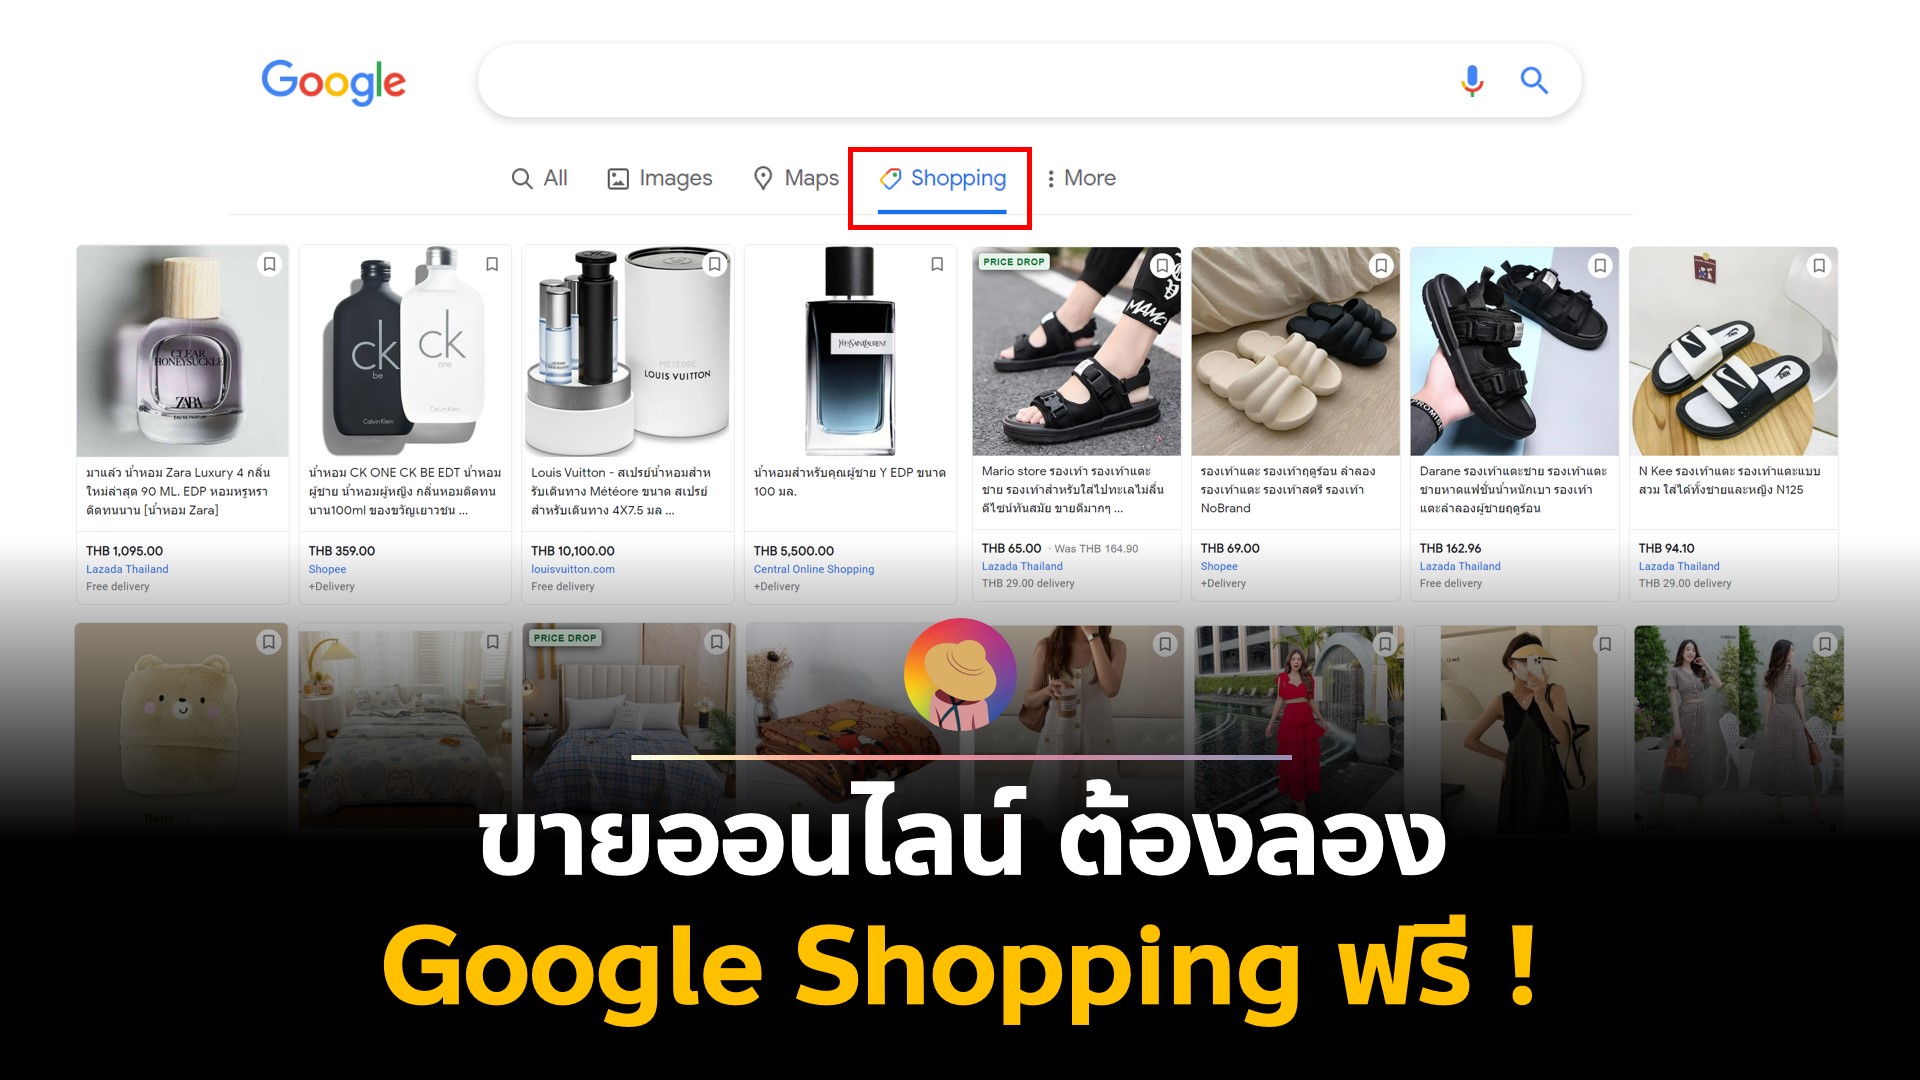 ขายออนไลน์ ต้องลอง Google Shopping ฟรี